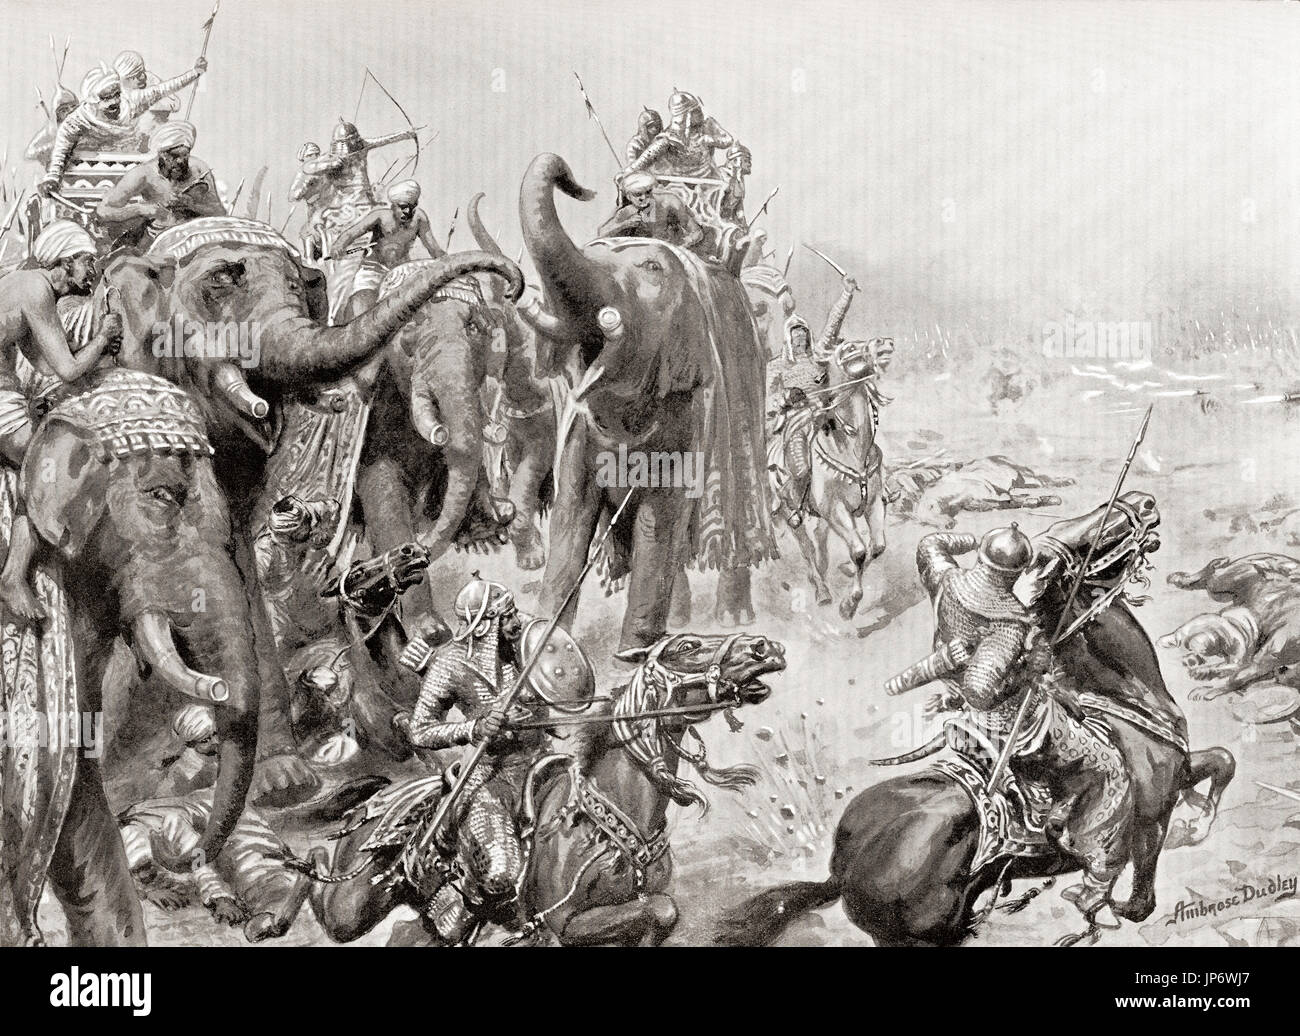 Babur introduce cañones en la batalla de Panipat, India, en 1526. Esta fue una de las primeras batallas de pólvora y armas de fuego de artillería de campo en la India. Después de la pintura por Ambrosio Dudley (1867-1951). La historia de Hutchinson de las Naciones, publicado en 1915. Foto de stock